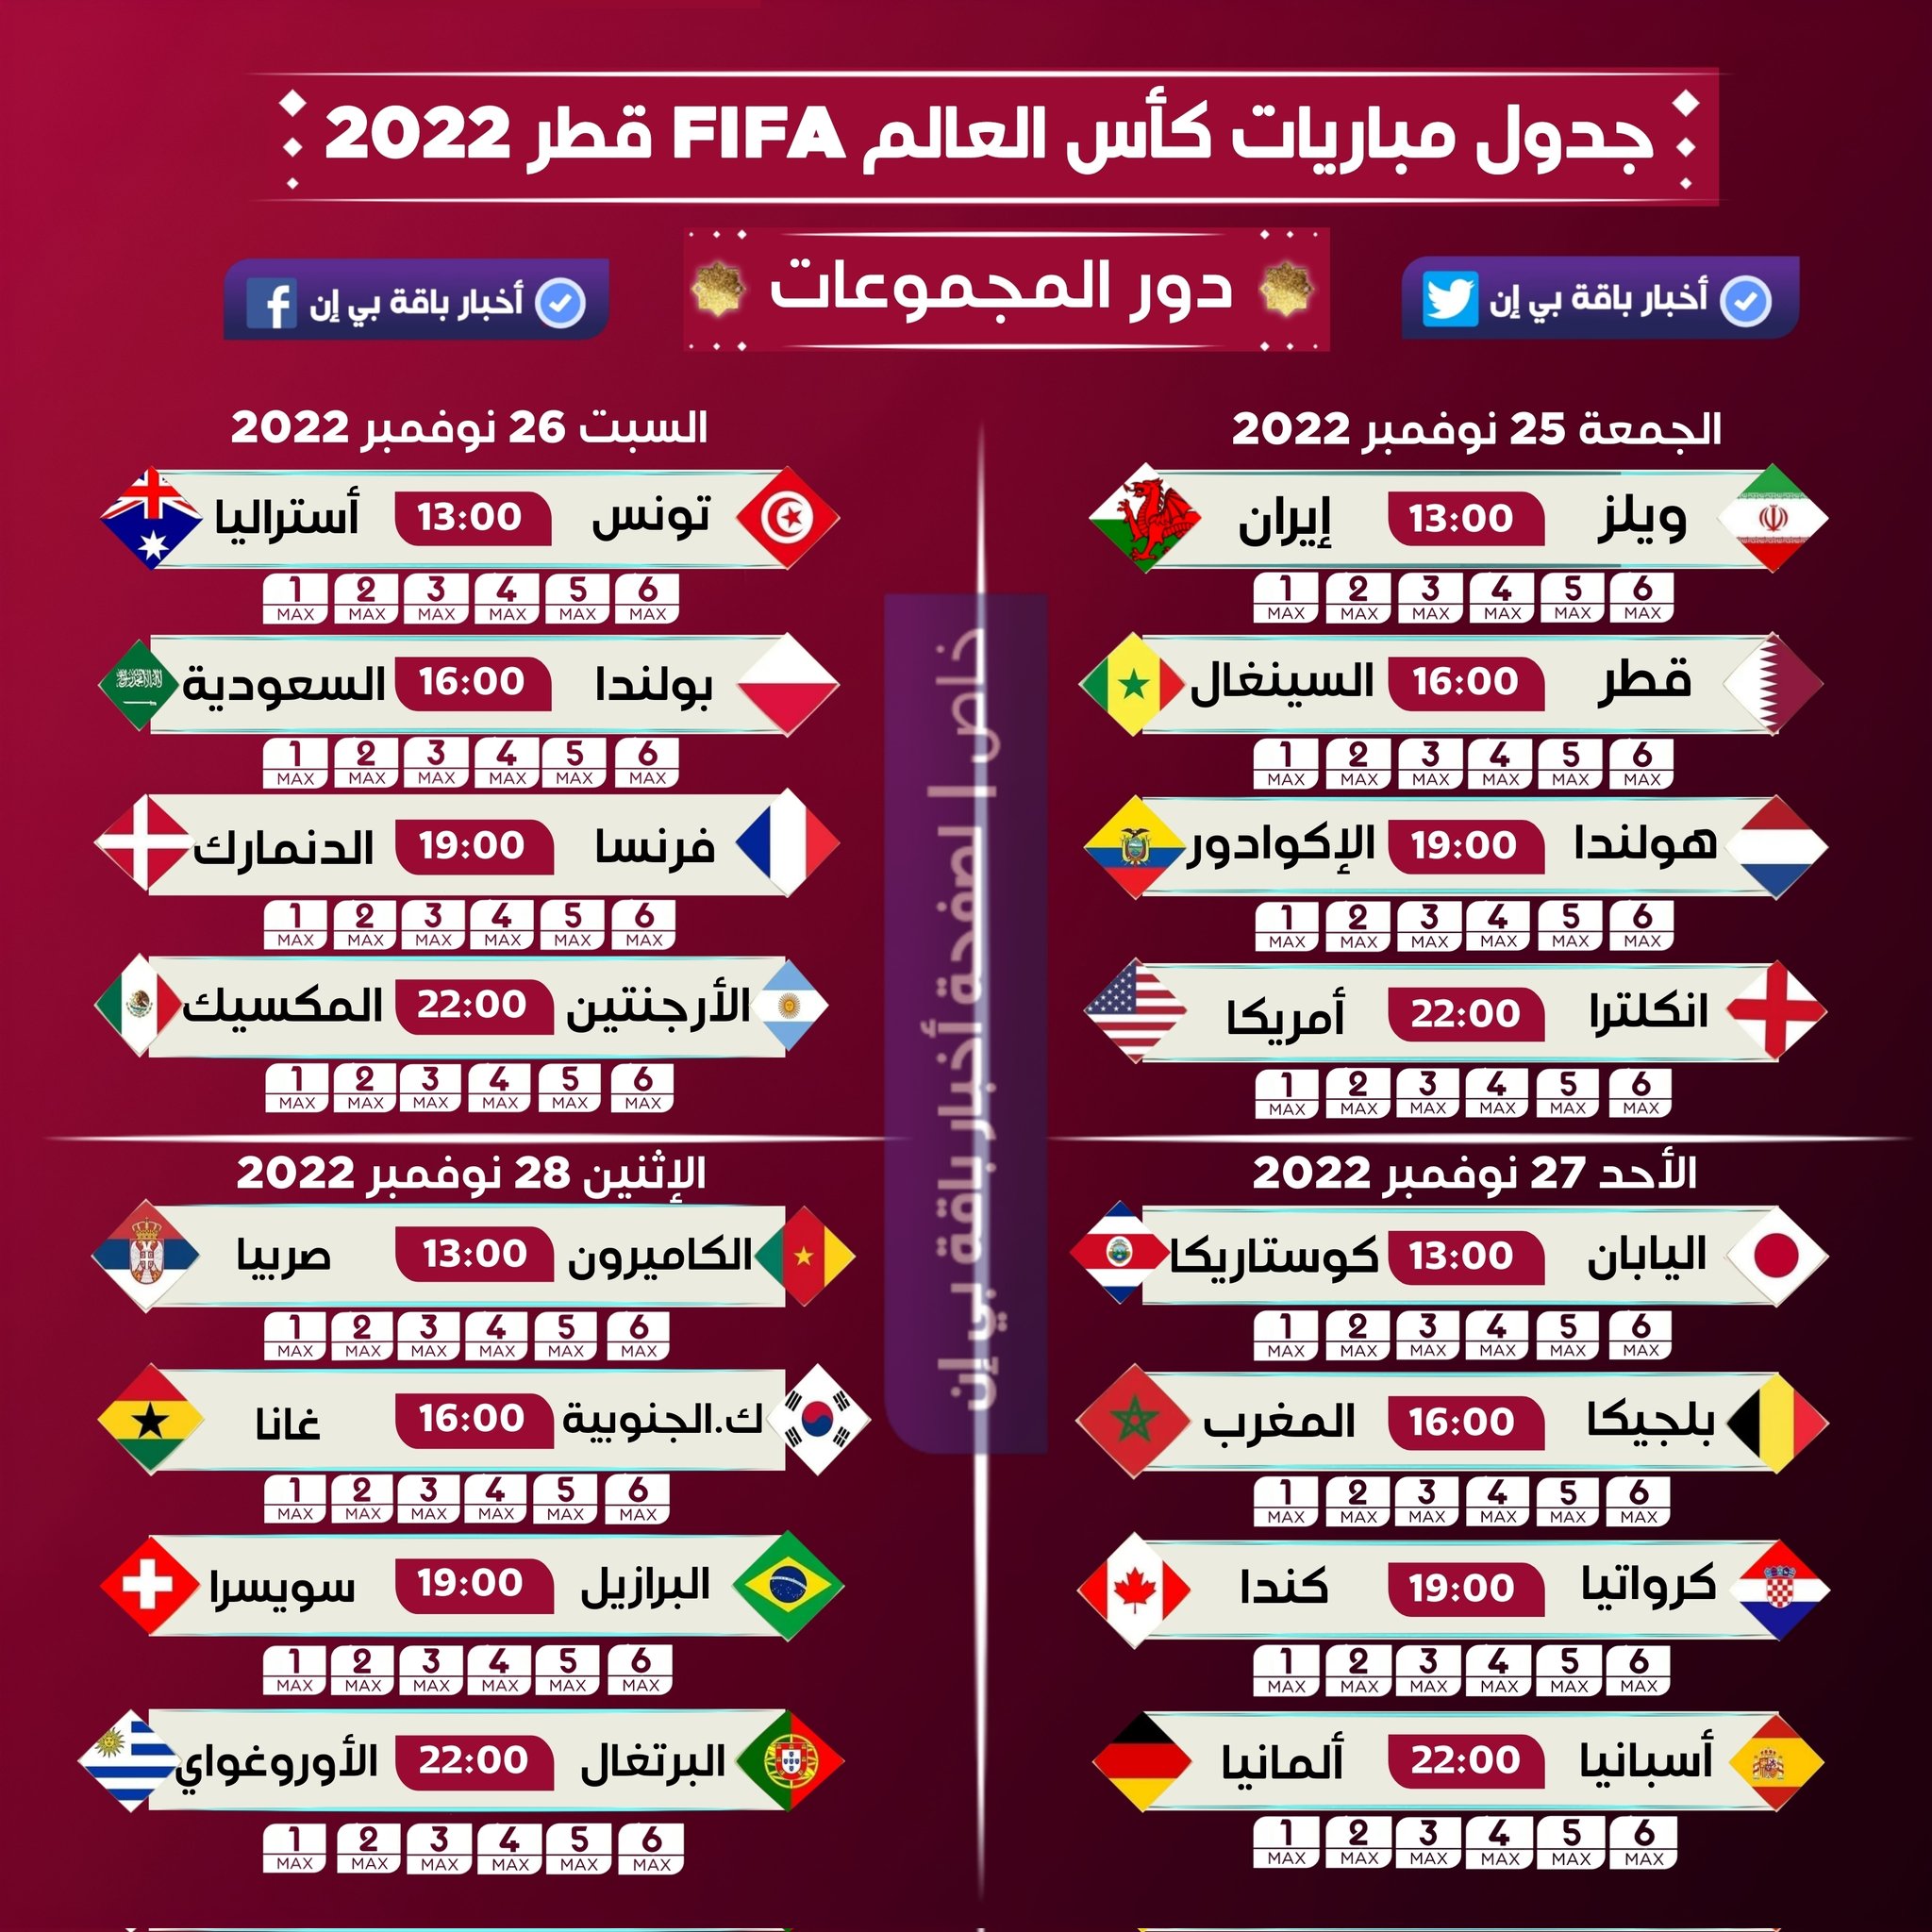 أخبار باقة بي أن on Twitter: "جدول مباريات كأس العالم FIFA قطر 2022 خاص  لصفحة أخبار باقة بي إن بالجودة عالية https://t.co/9AZBPZsUAS" / Twitter